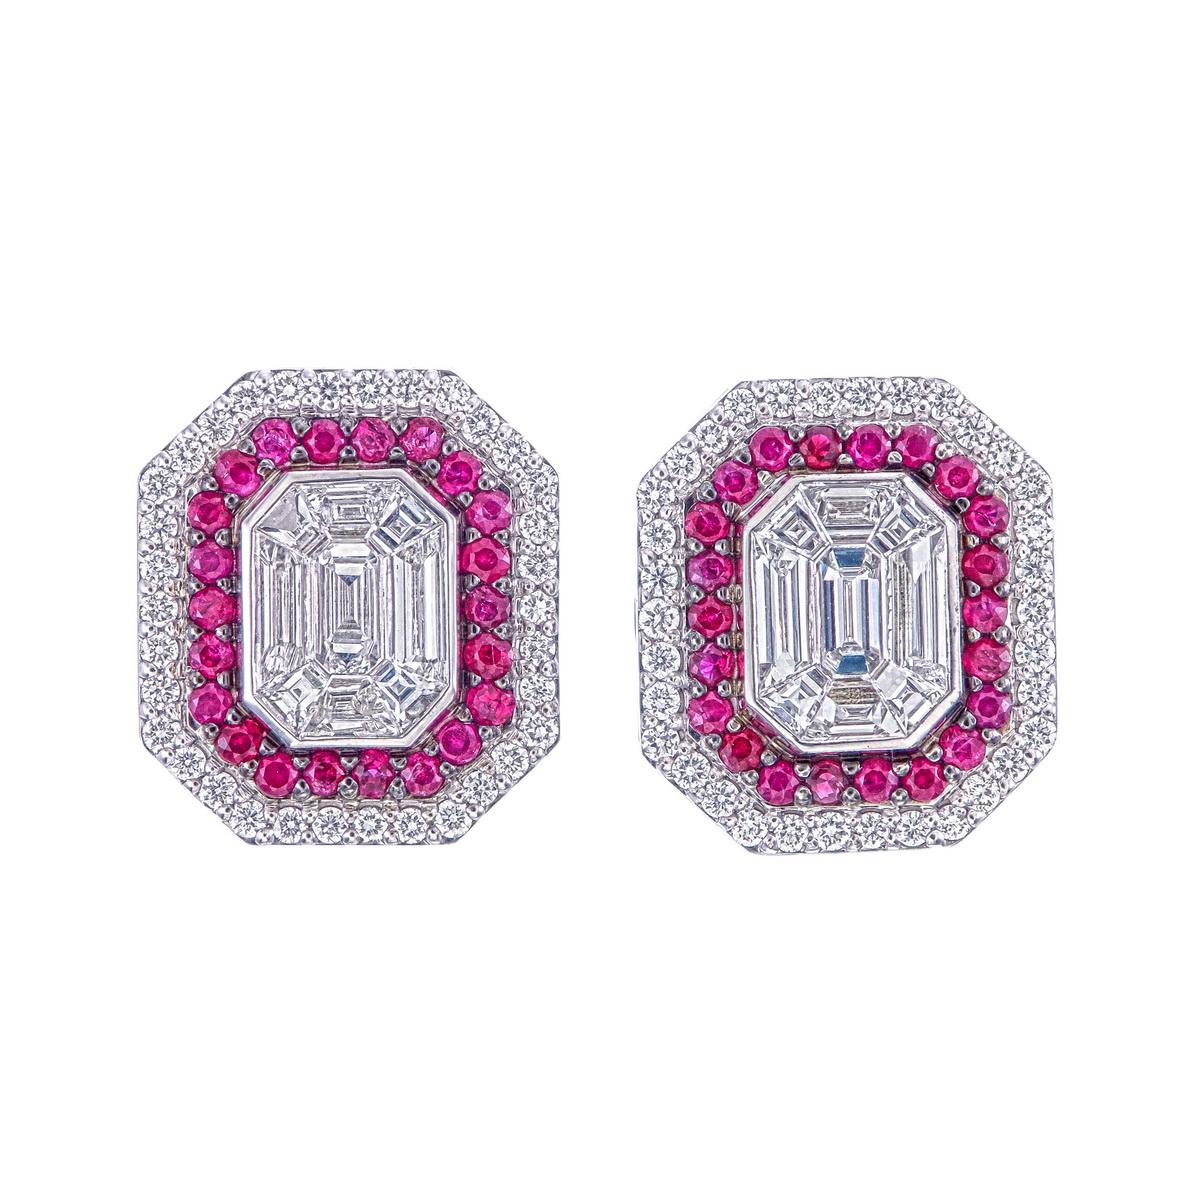 Dieses Paar Ohrringe ist mit 1,40 Karat Diamanten in zusammengesetzter unsichtbarer Fassung gefertigt, die ein Aussehen von 6 Karat Paar.
VVS Reinheit, EF Farbe Diamanten verwendet werden 
Extrem leicht für die Ohren 
Ein 6-Karat-Paar Diamanten im